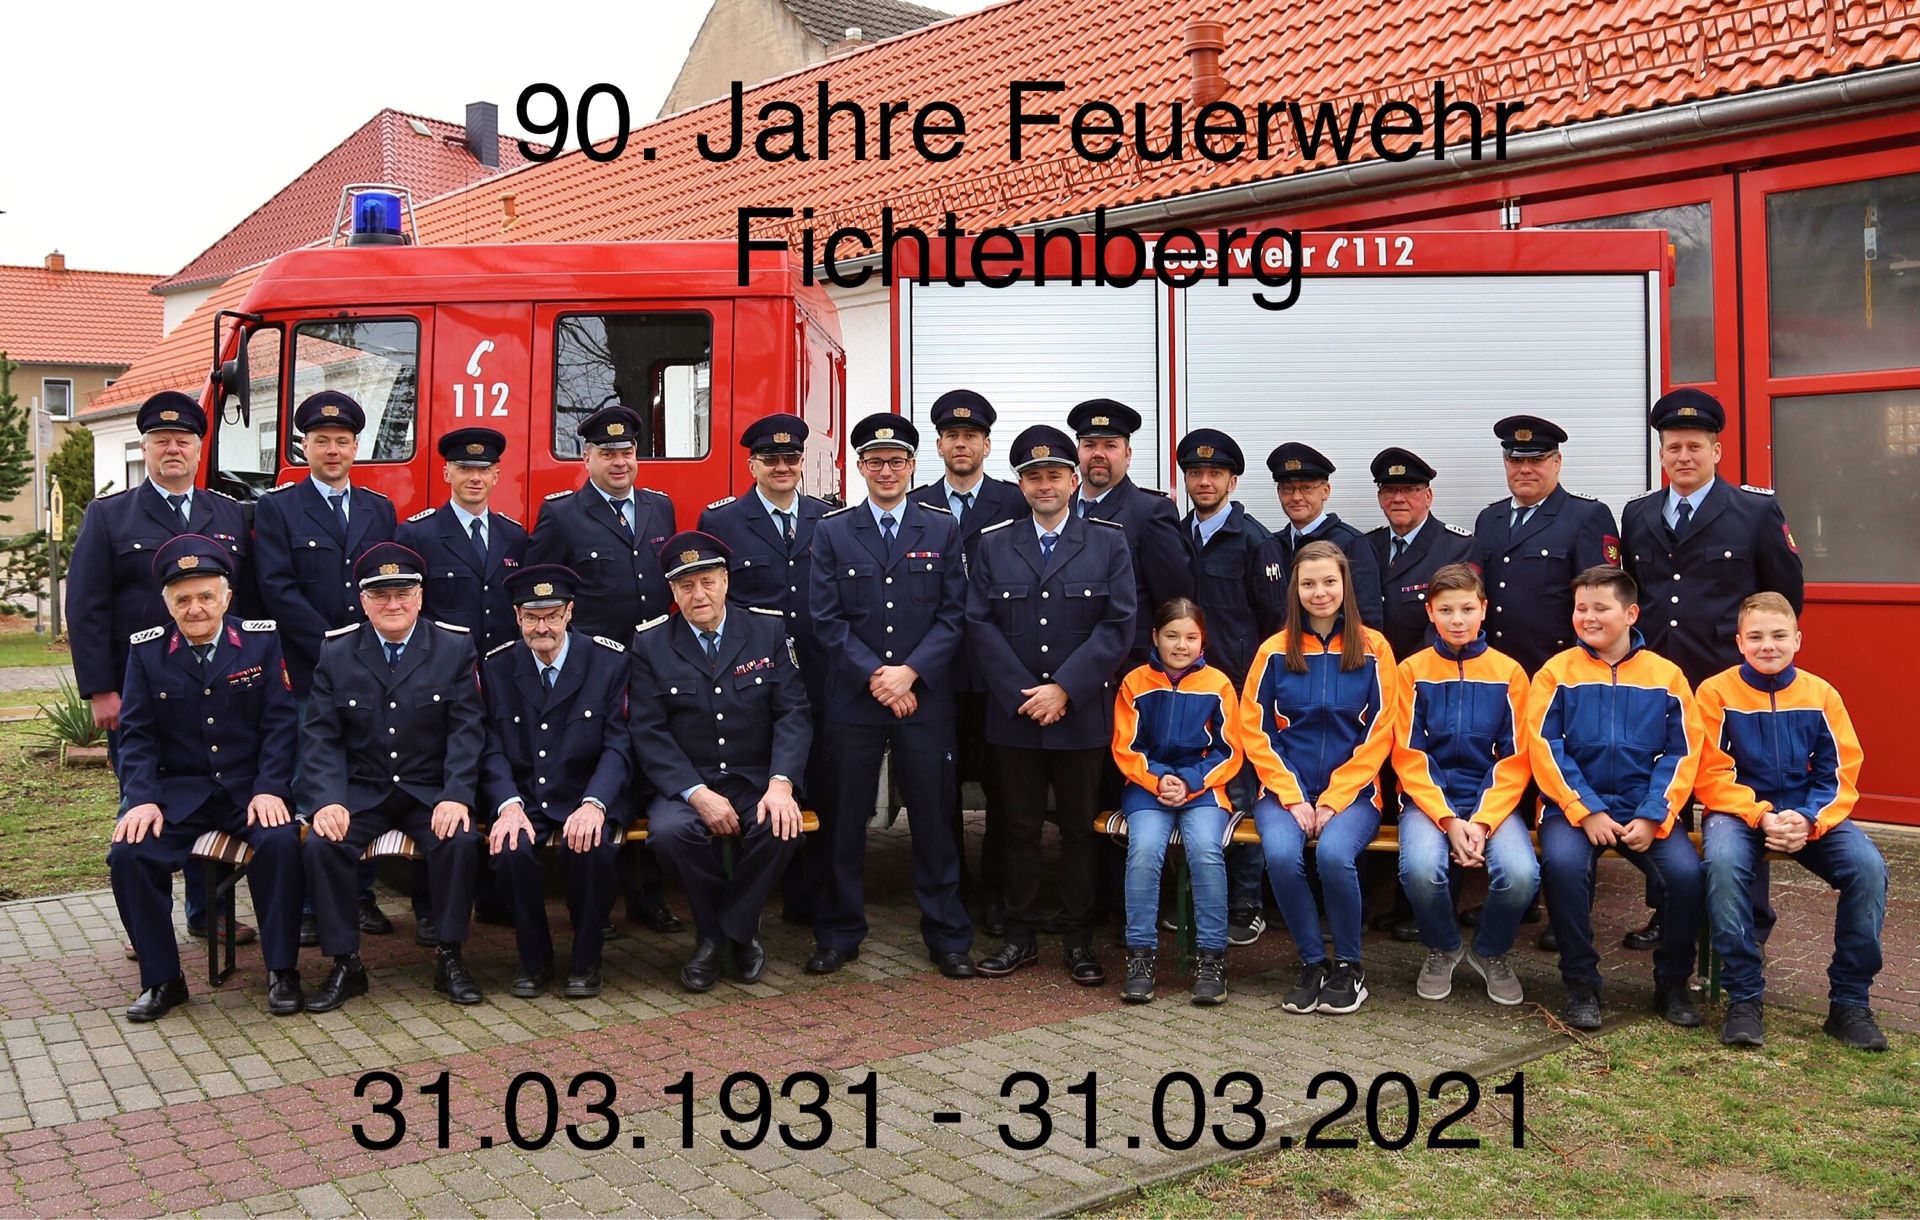 90 Jahre Feuerwehr Fichtenberg klein